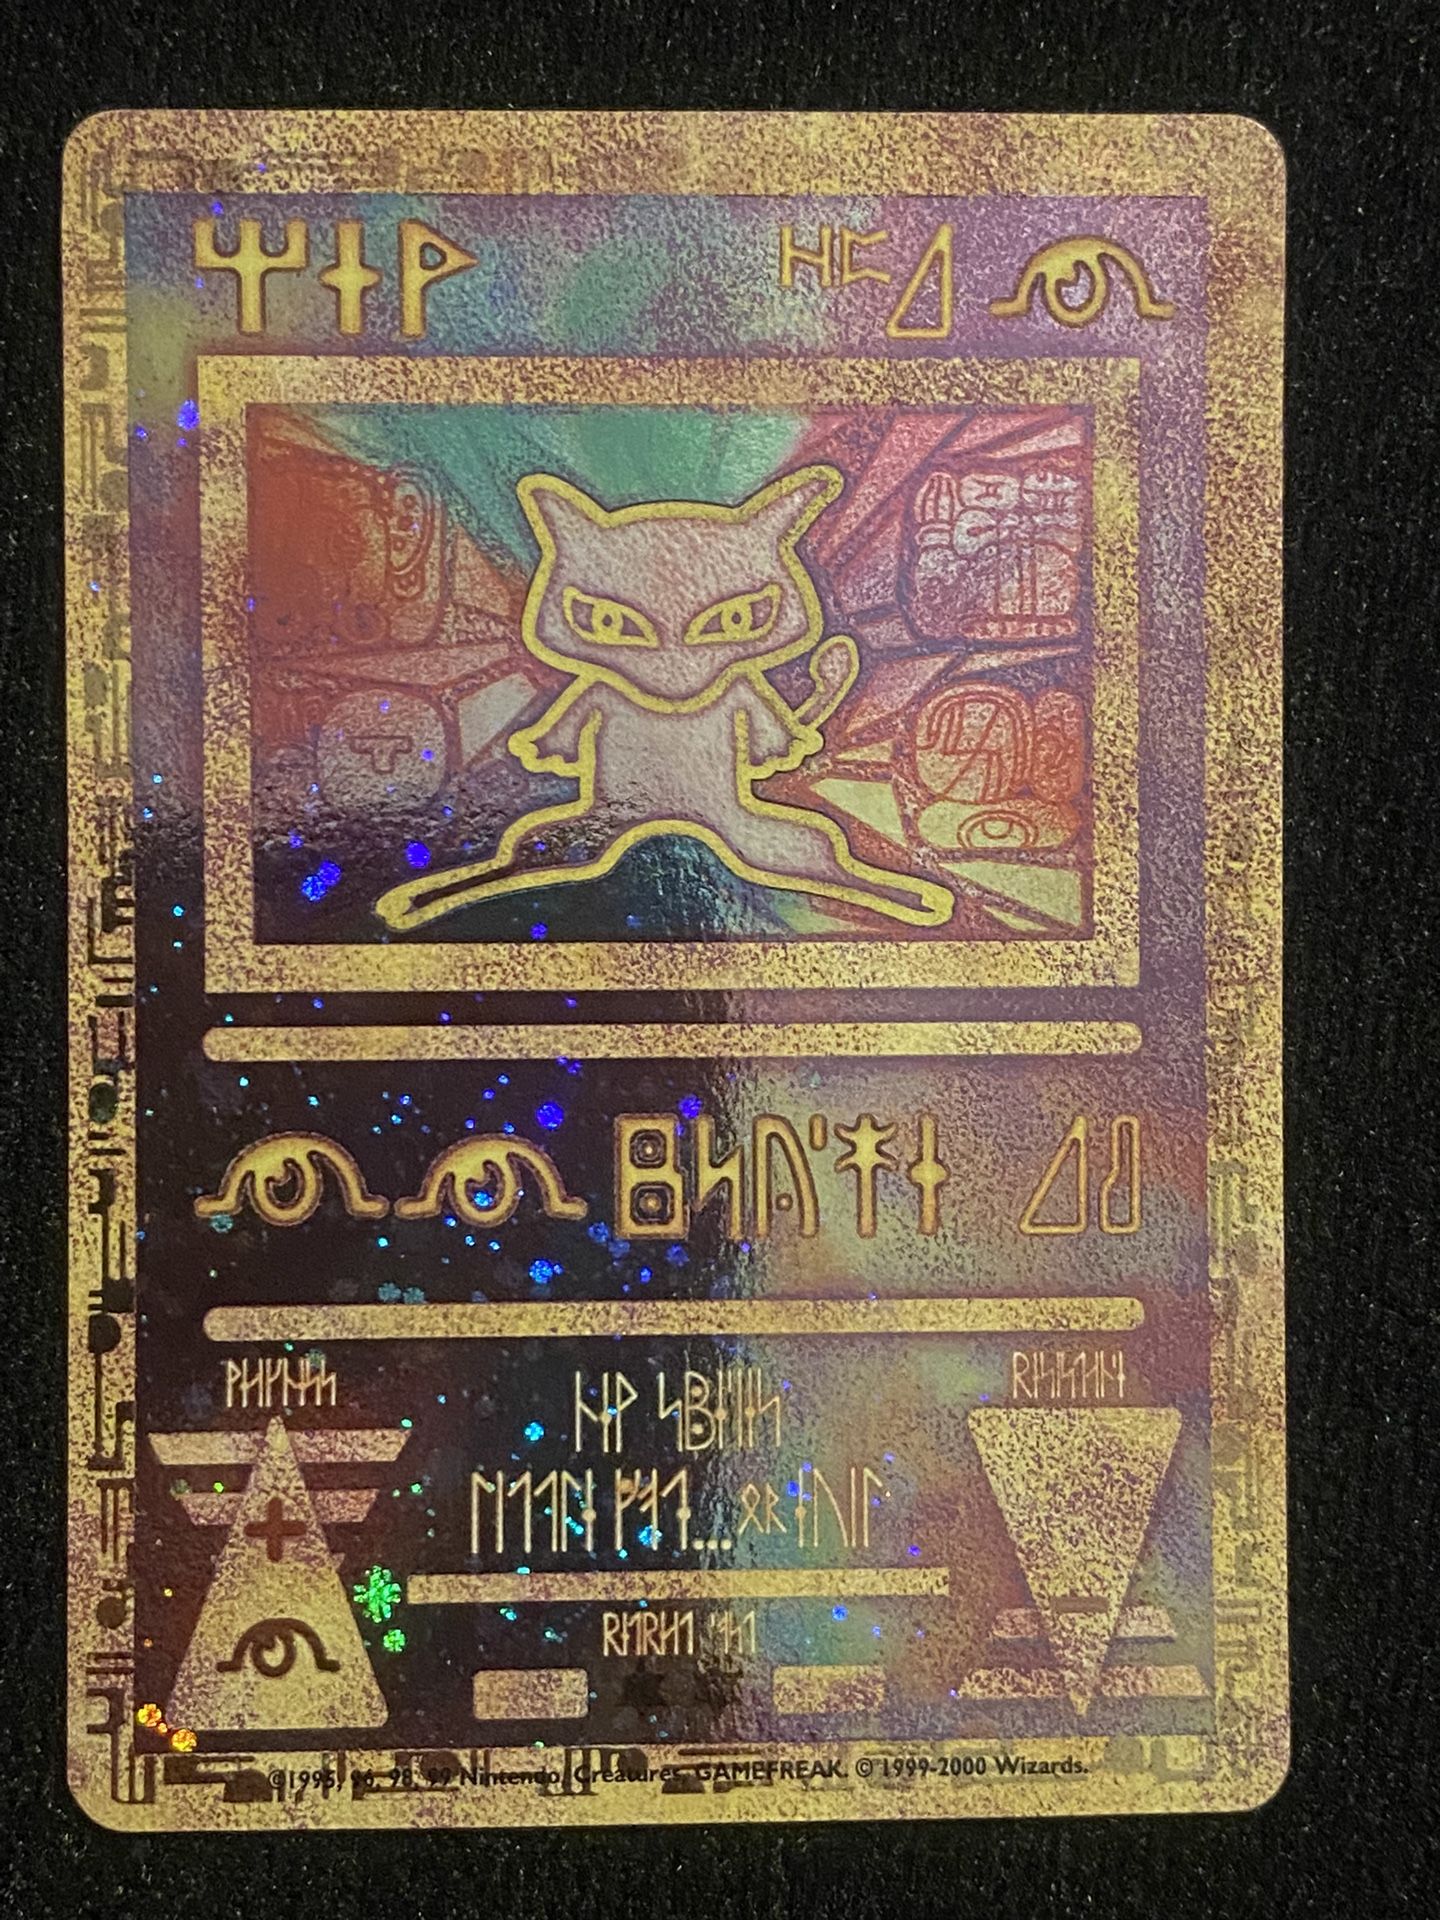 ancient mew Holo Promo 2001 Pokémon trading card